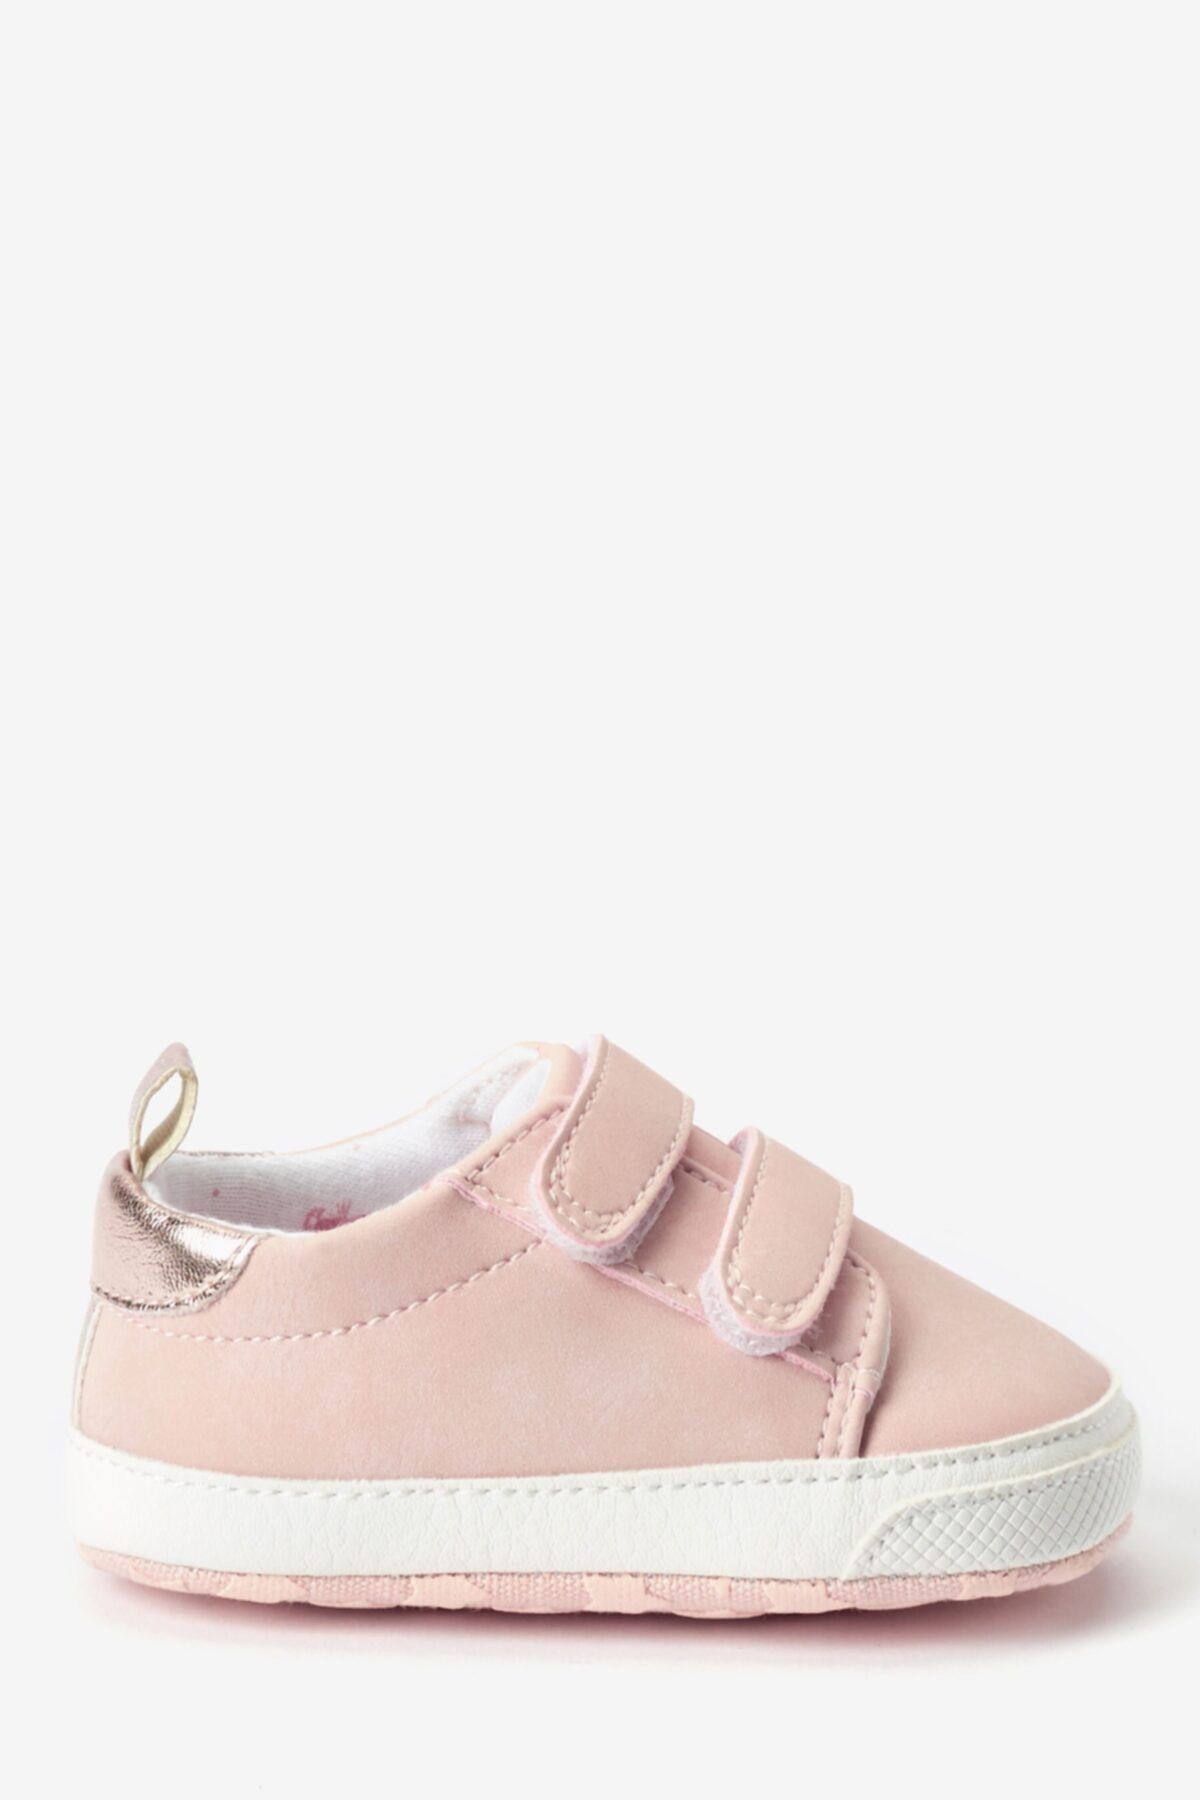 Next Baby Bebek Ayakkabısı